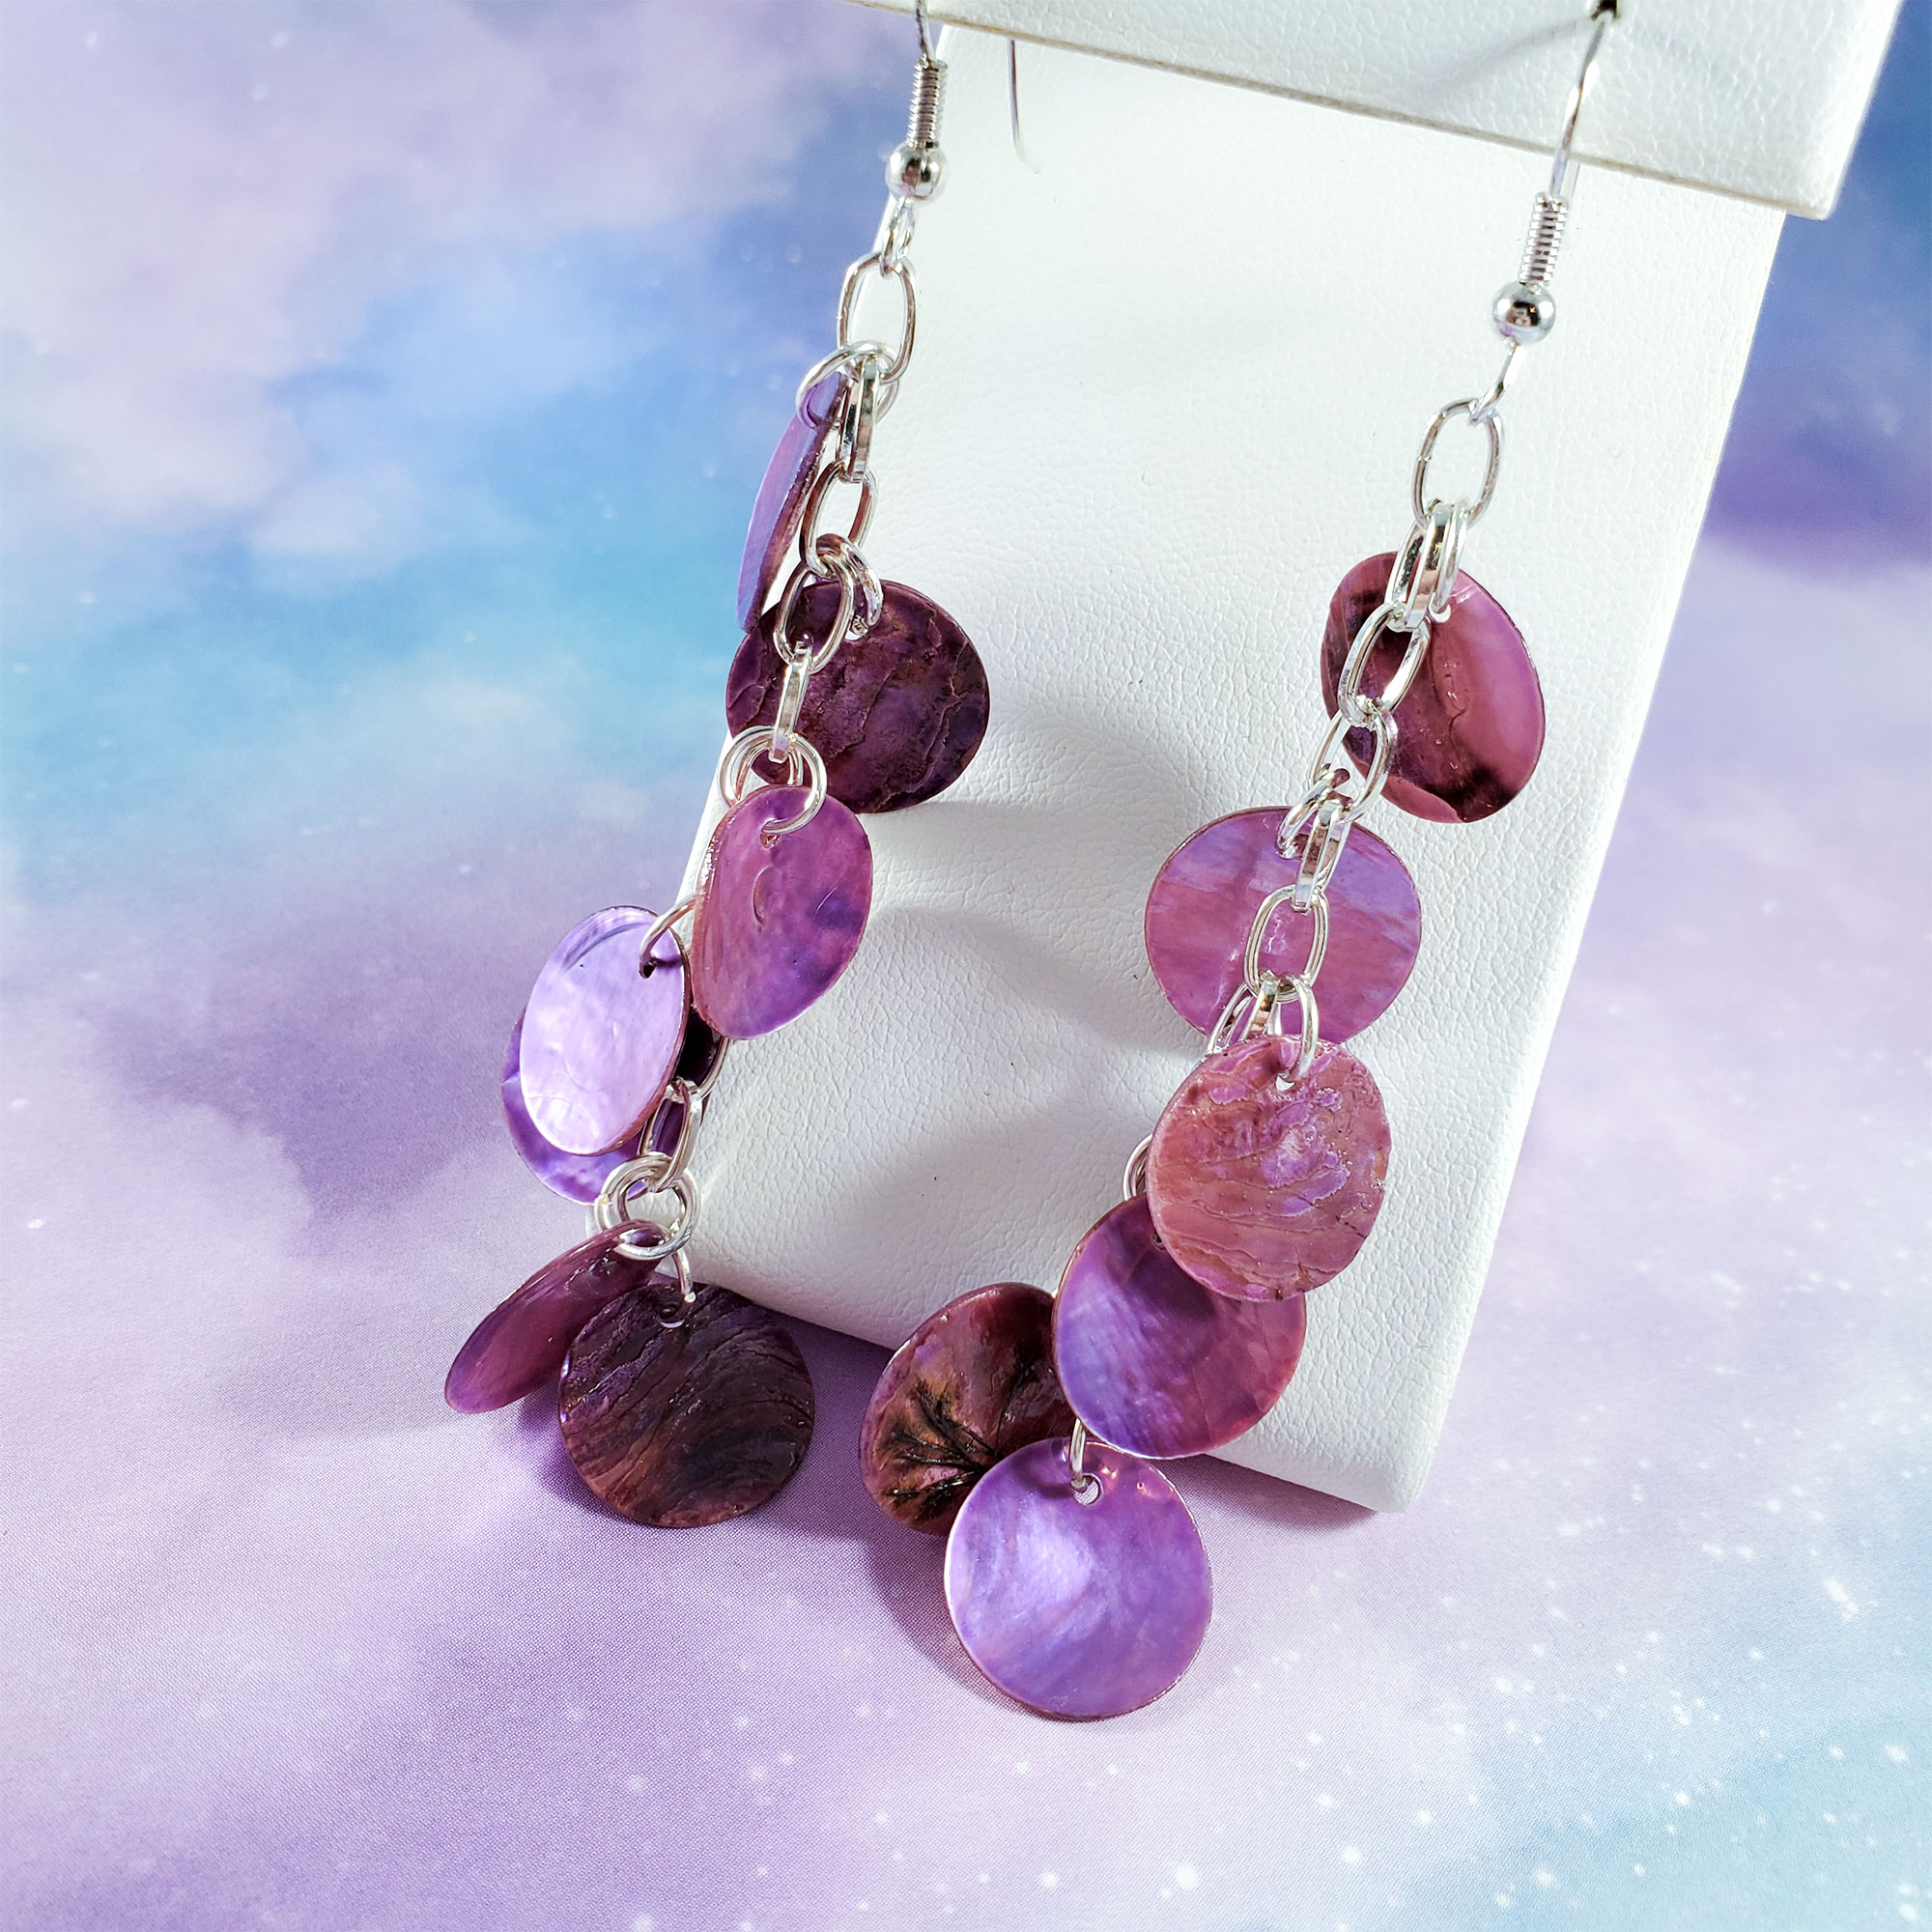 Dragon Scale Earrings in Purple by Wilde Designs